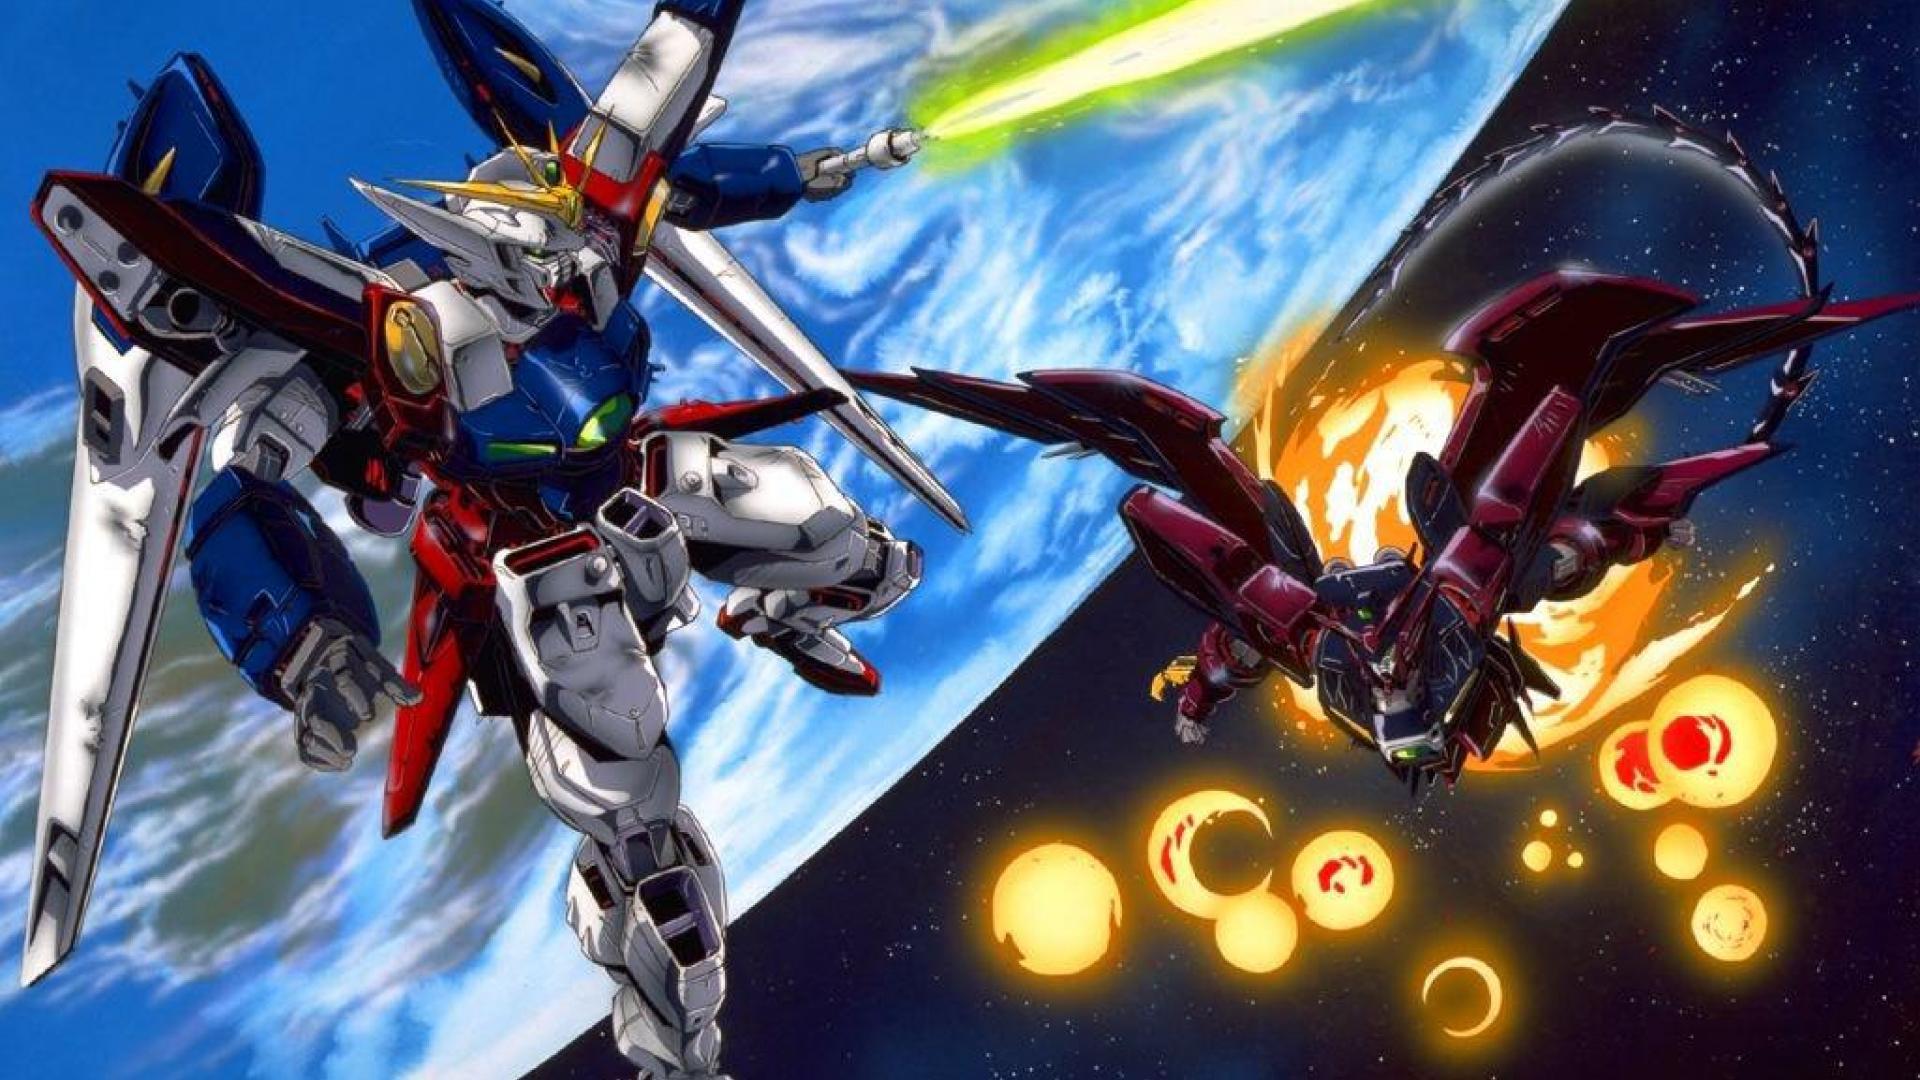 1920x1080 Gundam Background Tải xuống miễn phí